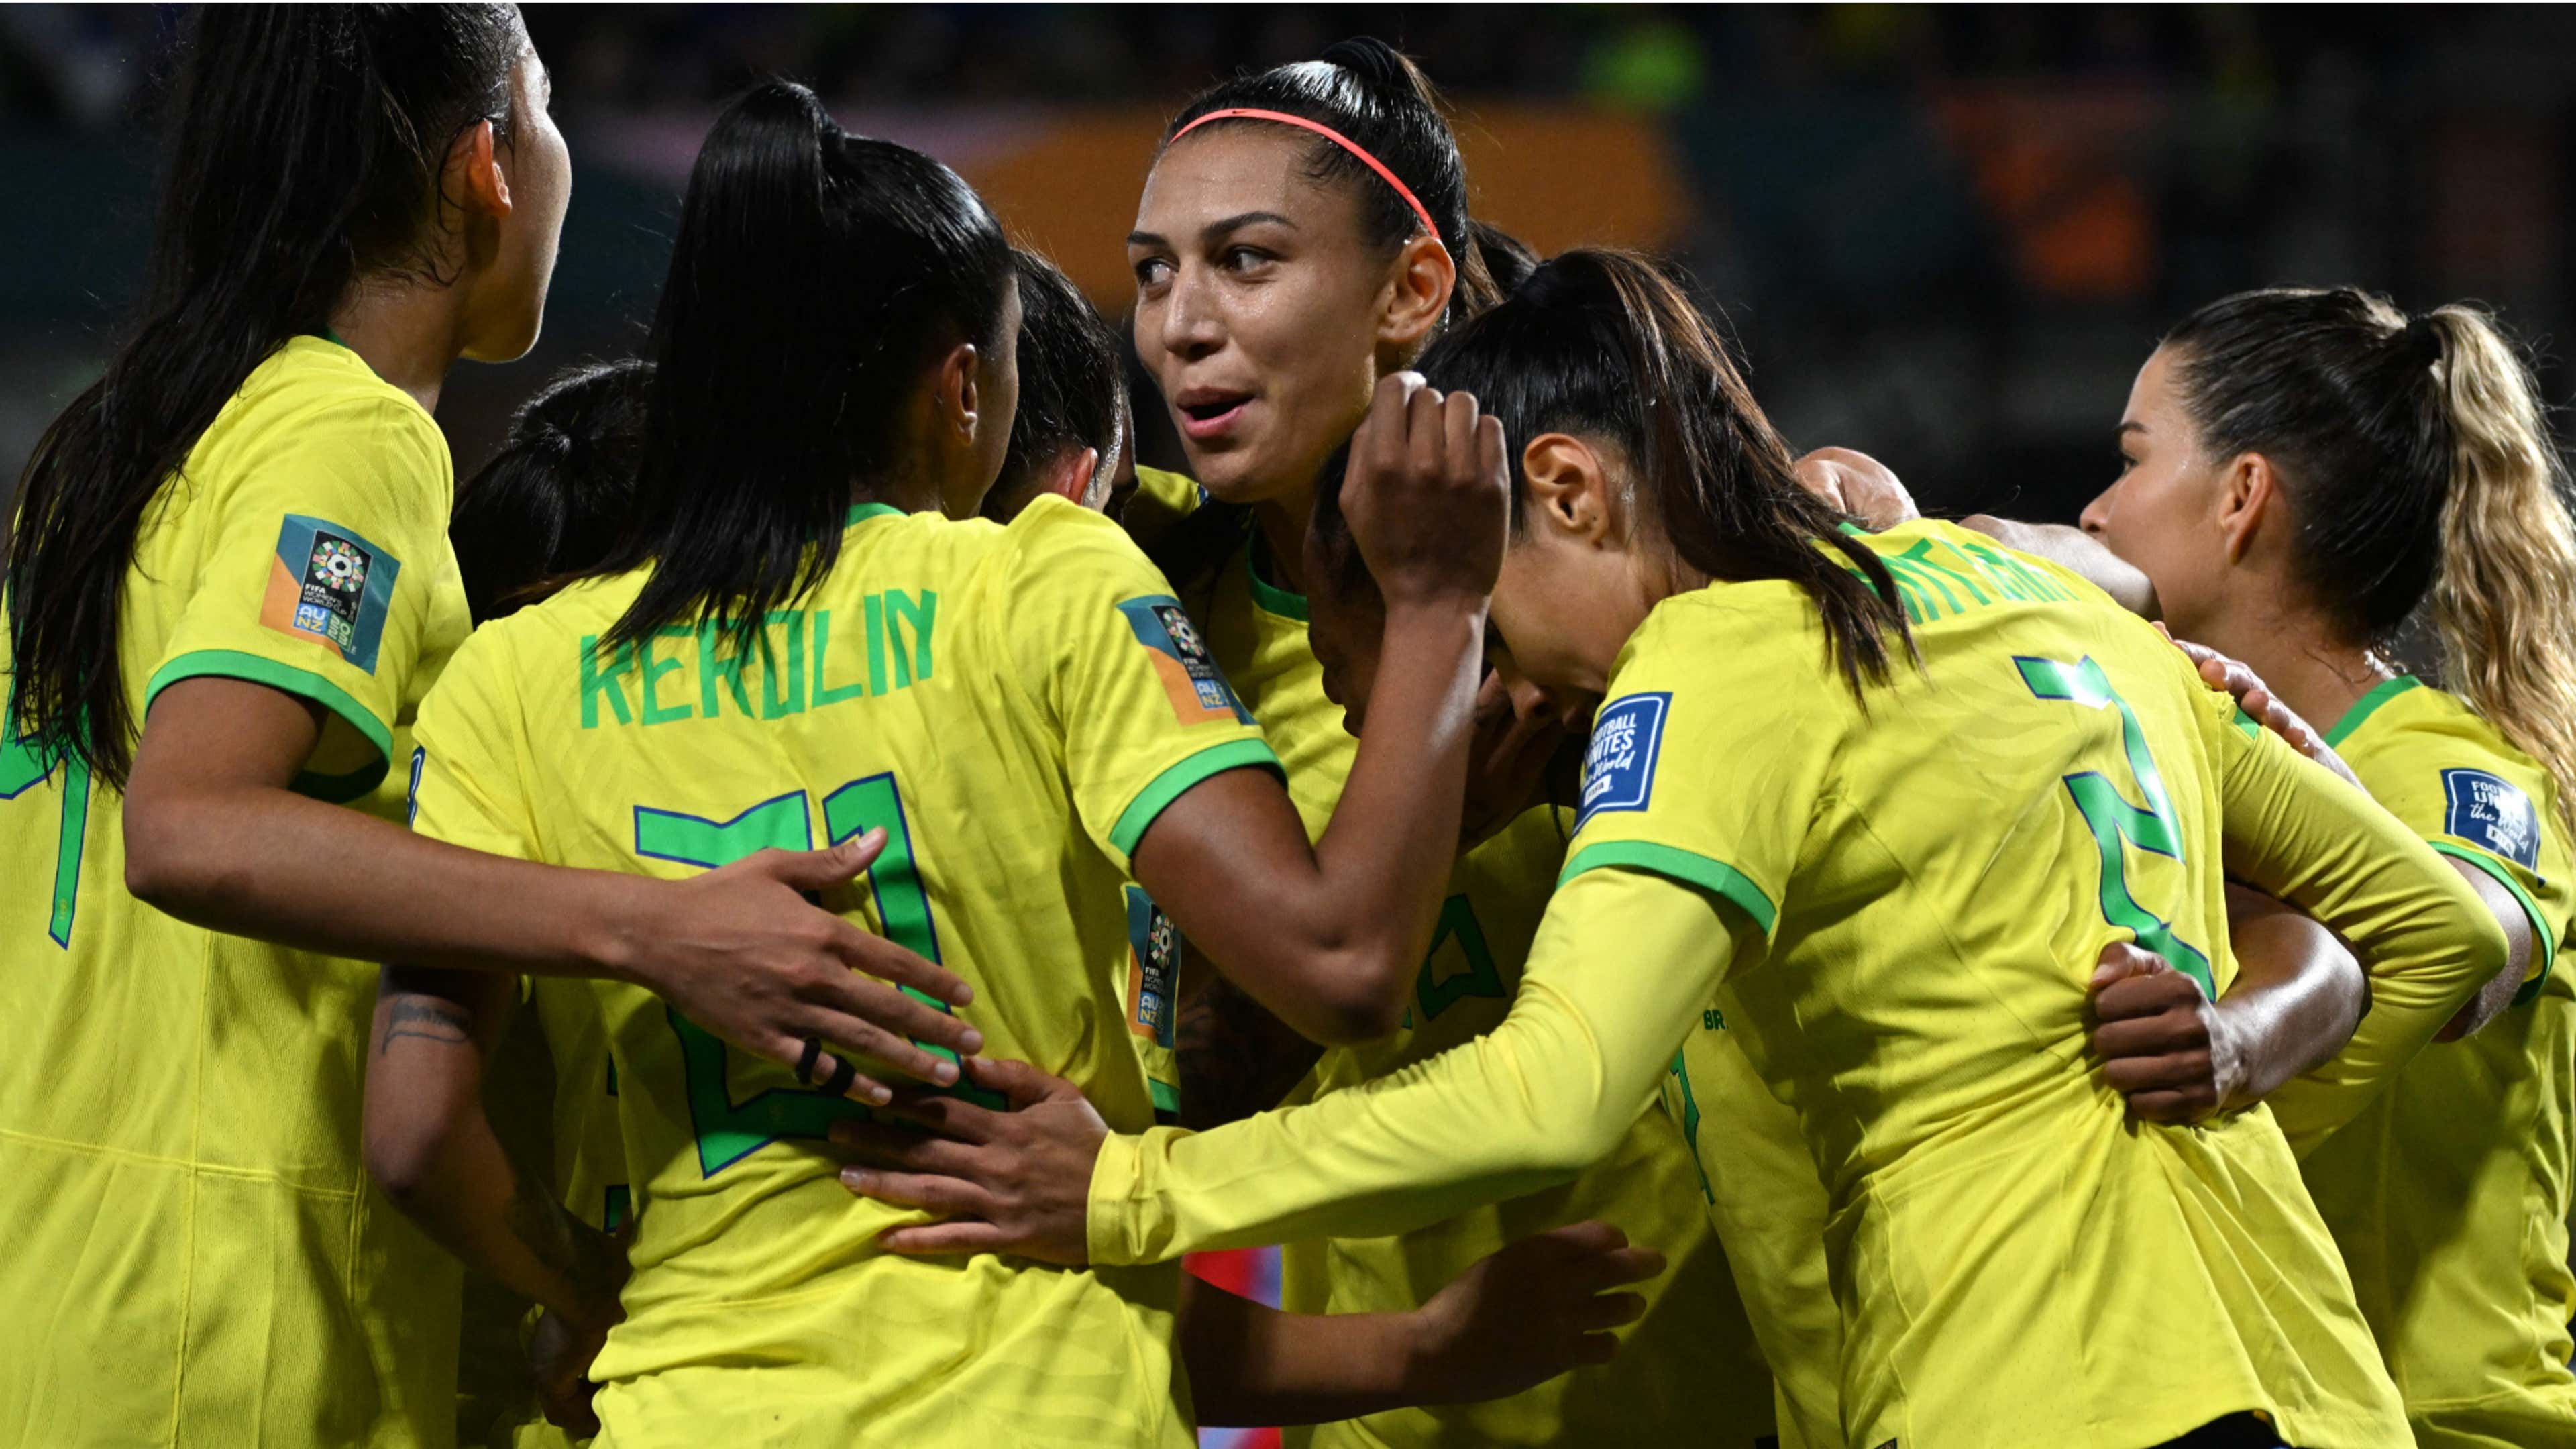 Jogo da Copa do Mundo Feminina ao vivo: Brasil x Panamá